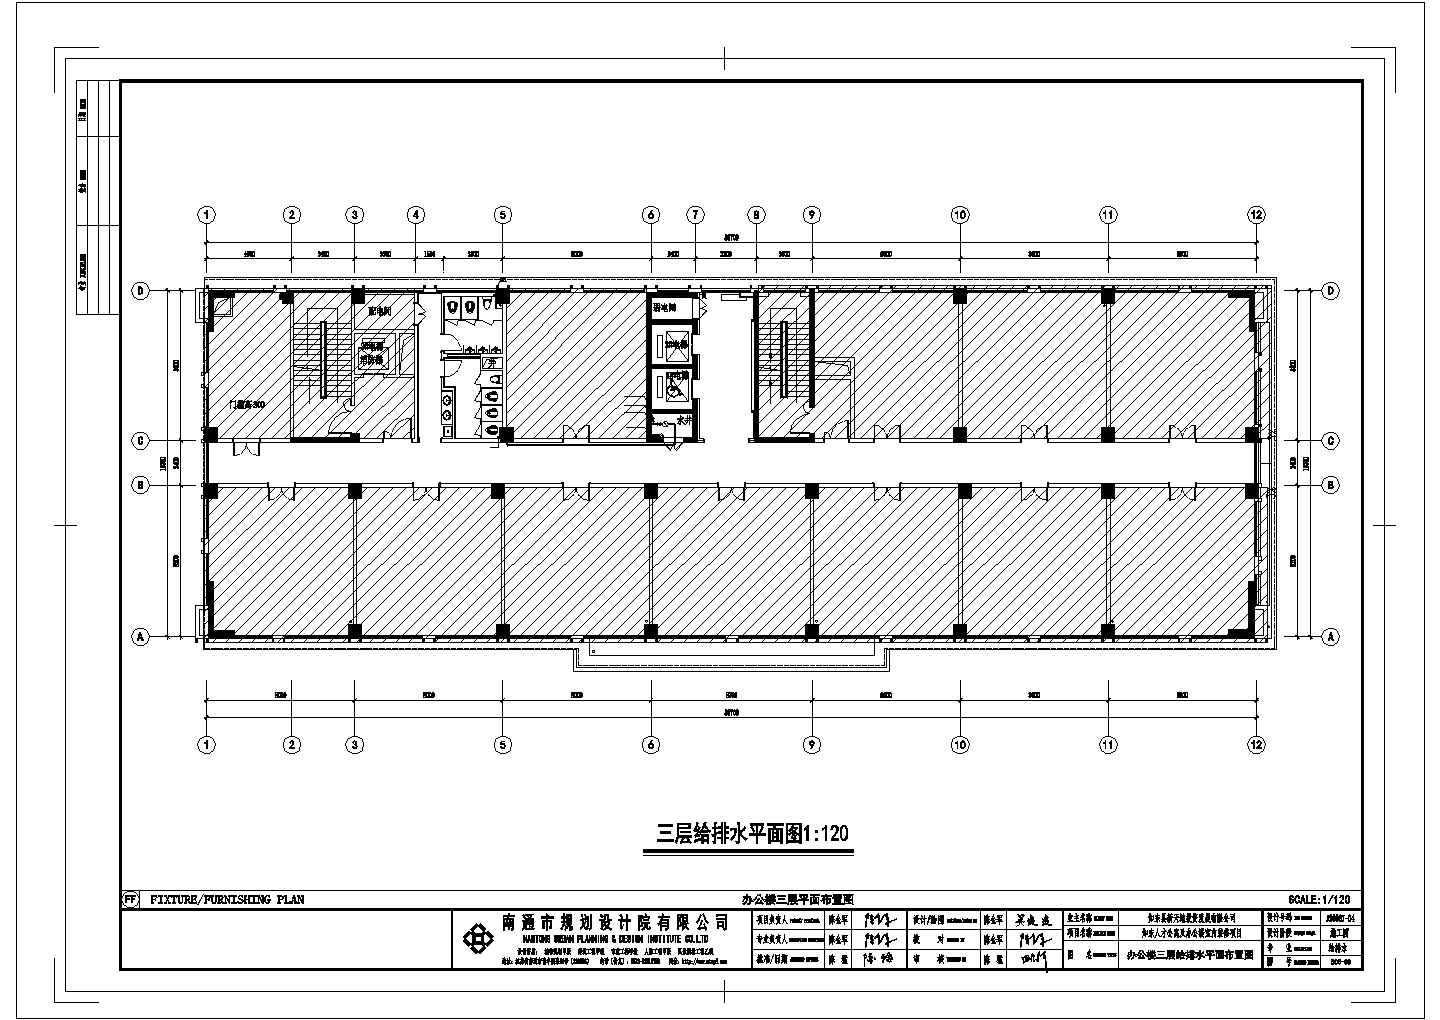 上海市某社区13层人才公寓给排水系统设计CAD图纸